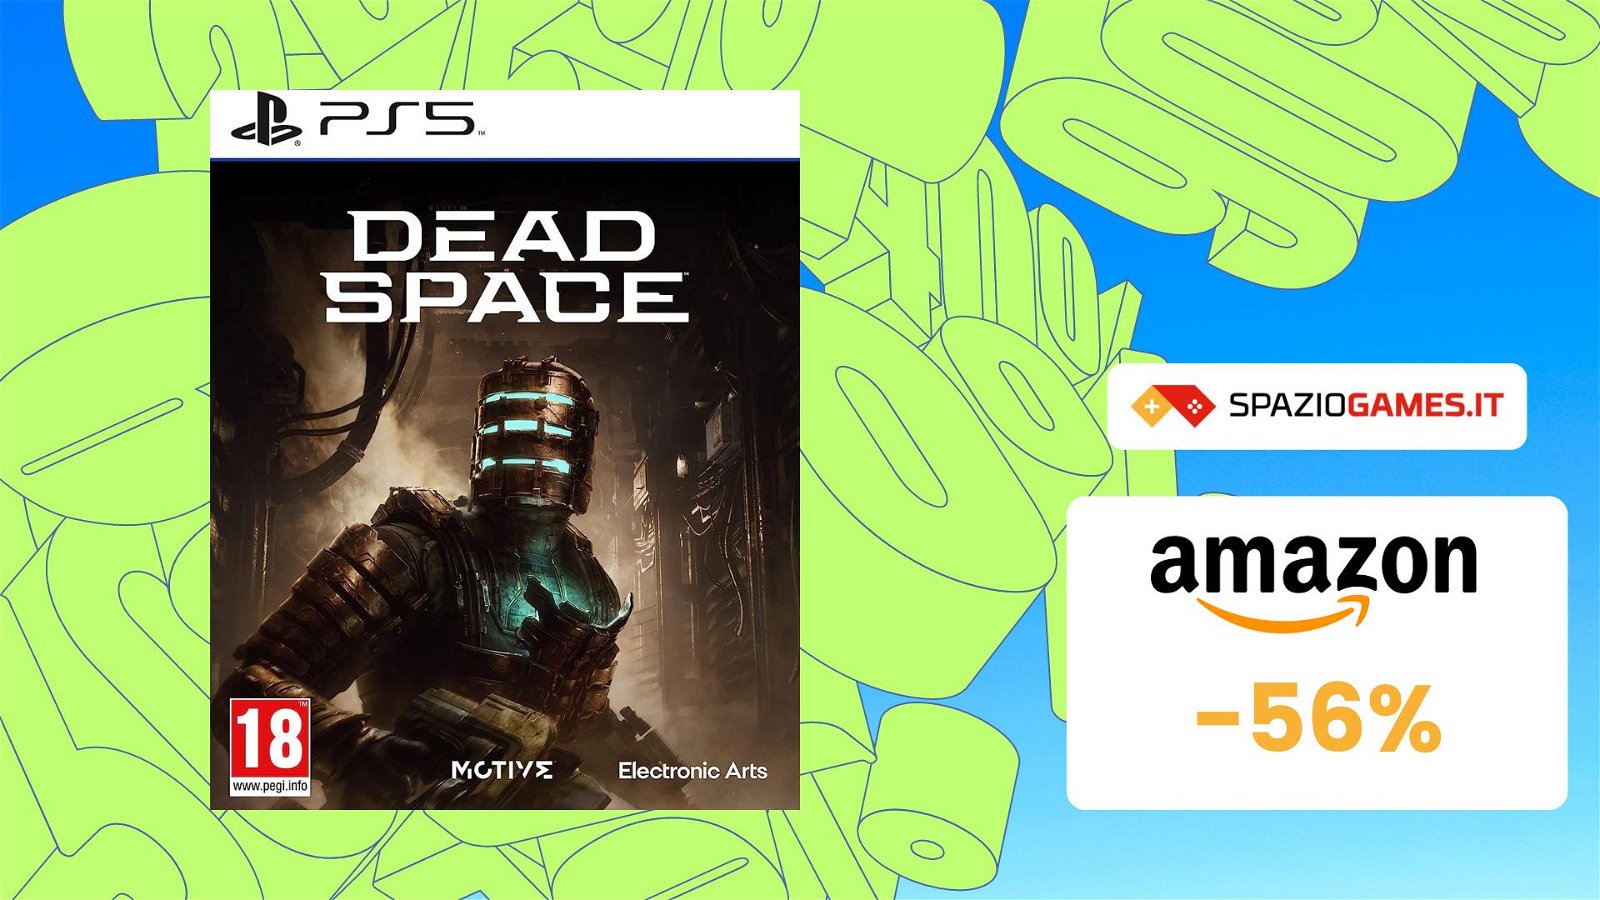 Dead Space per PS5 oggi vi costa MENO della metà! (-56%)